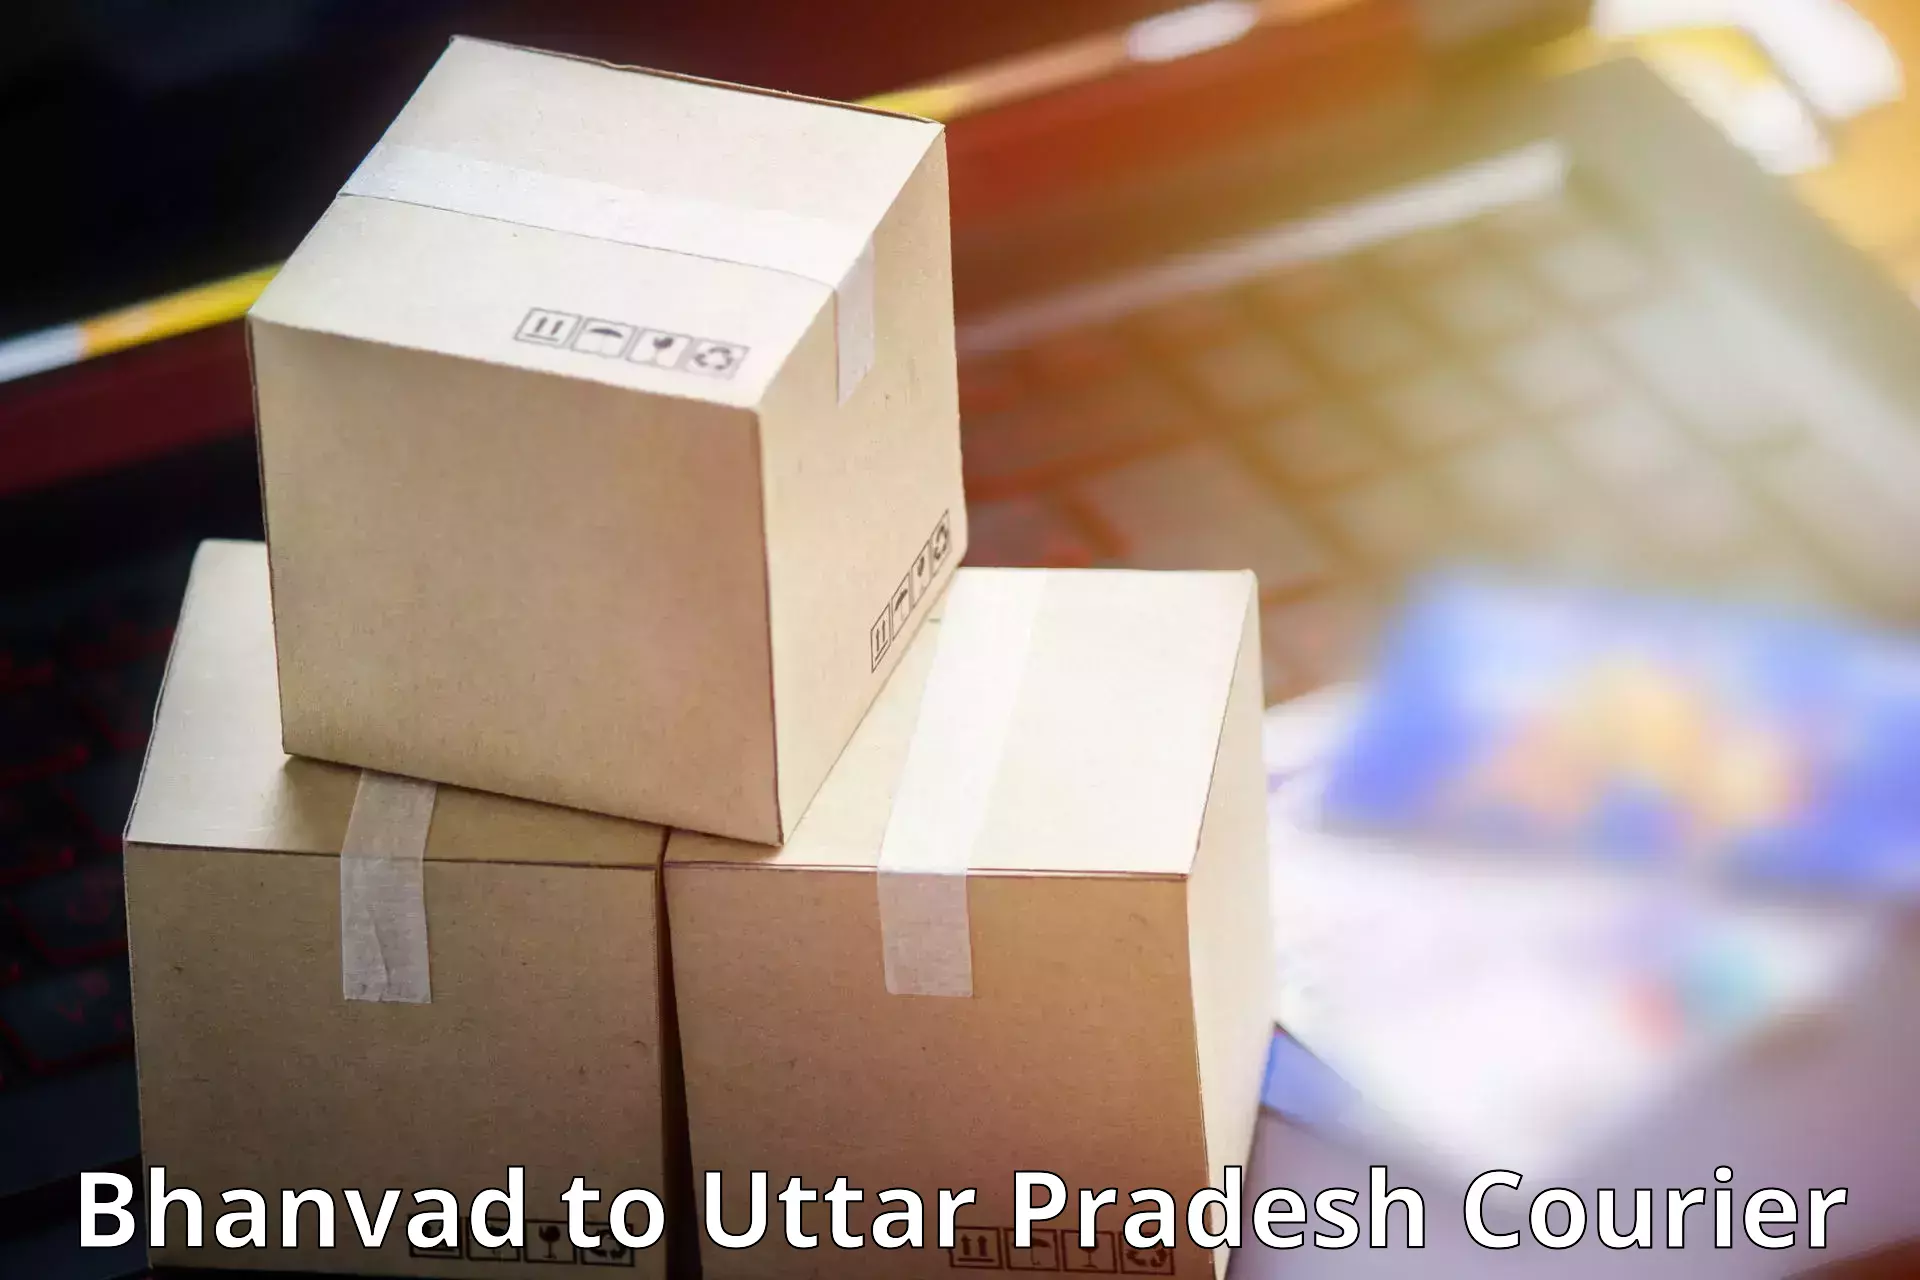 Next day courier Bhanvad to Uttar Pradesh